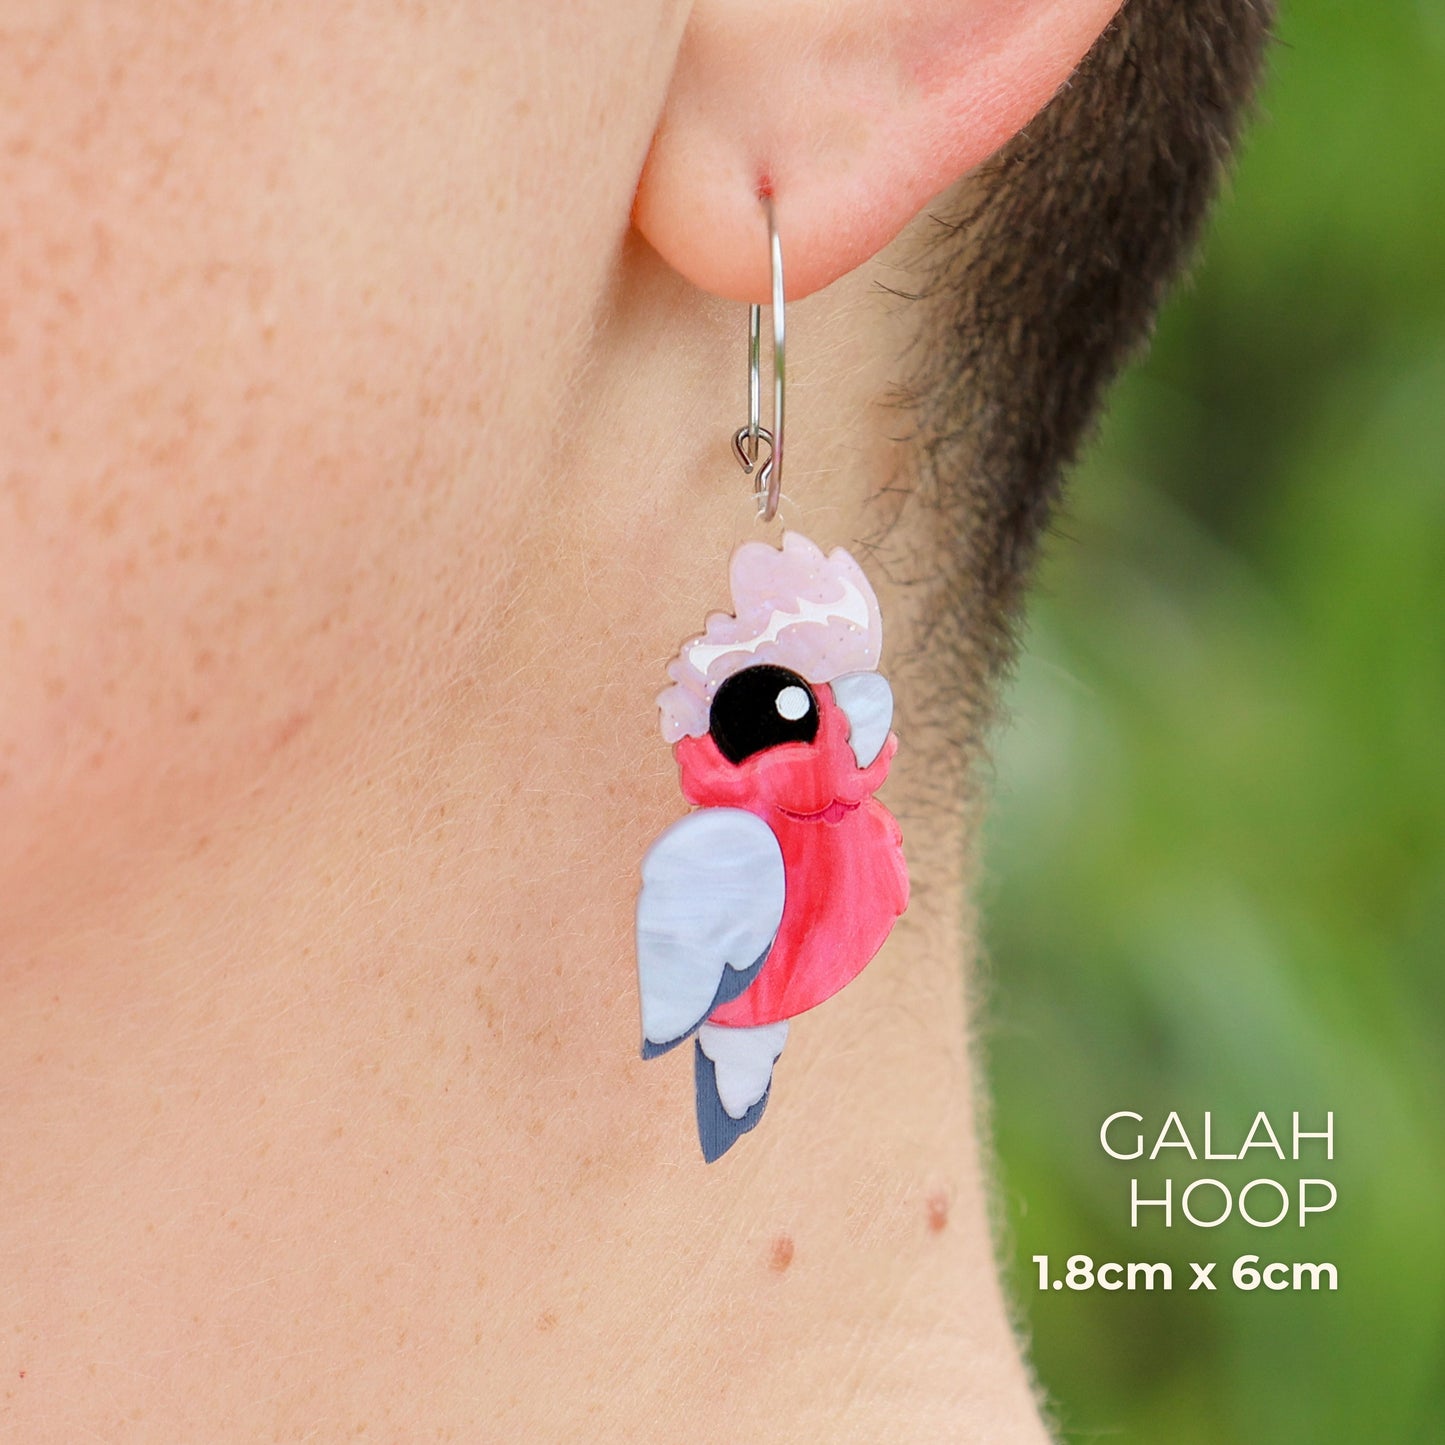 BINKABU Galah handmade acrylic bird earringsBINKABU Galah handmade acrylic bird earrings